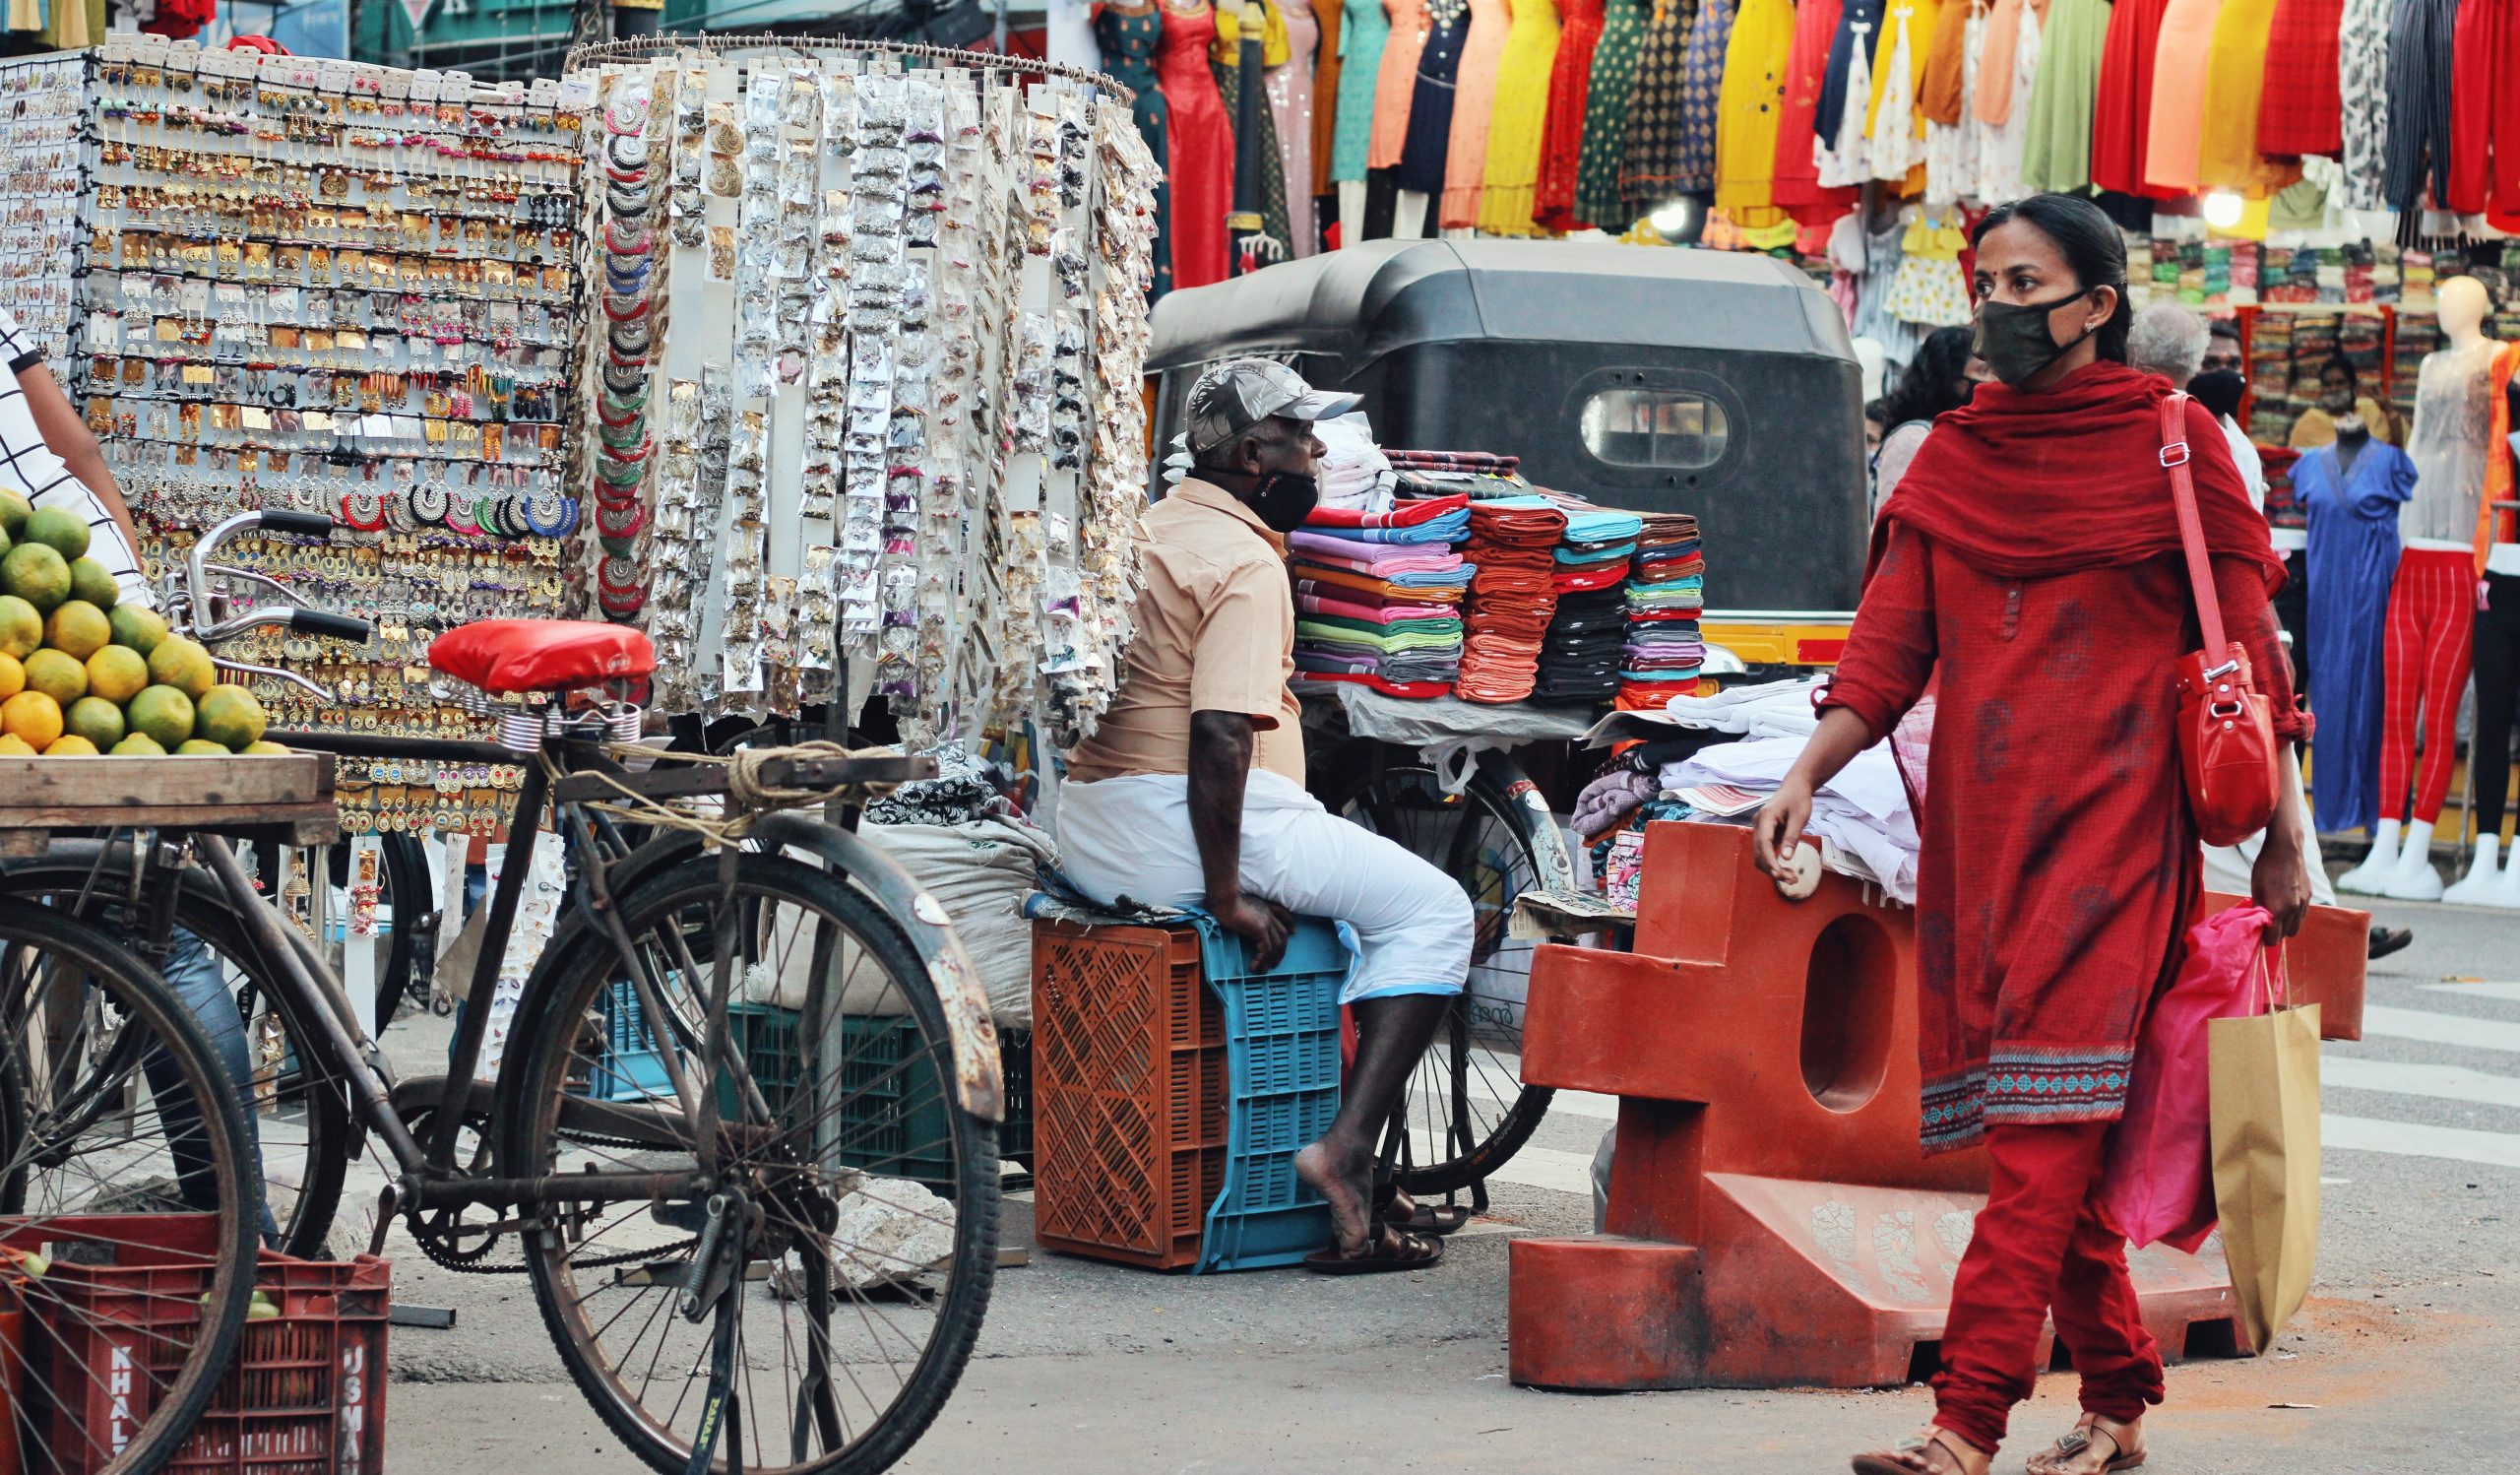 A woman walking through market